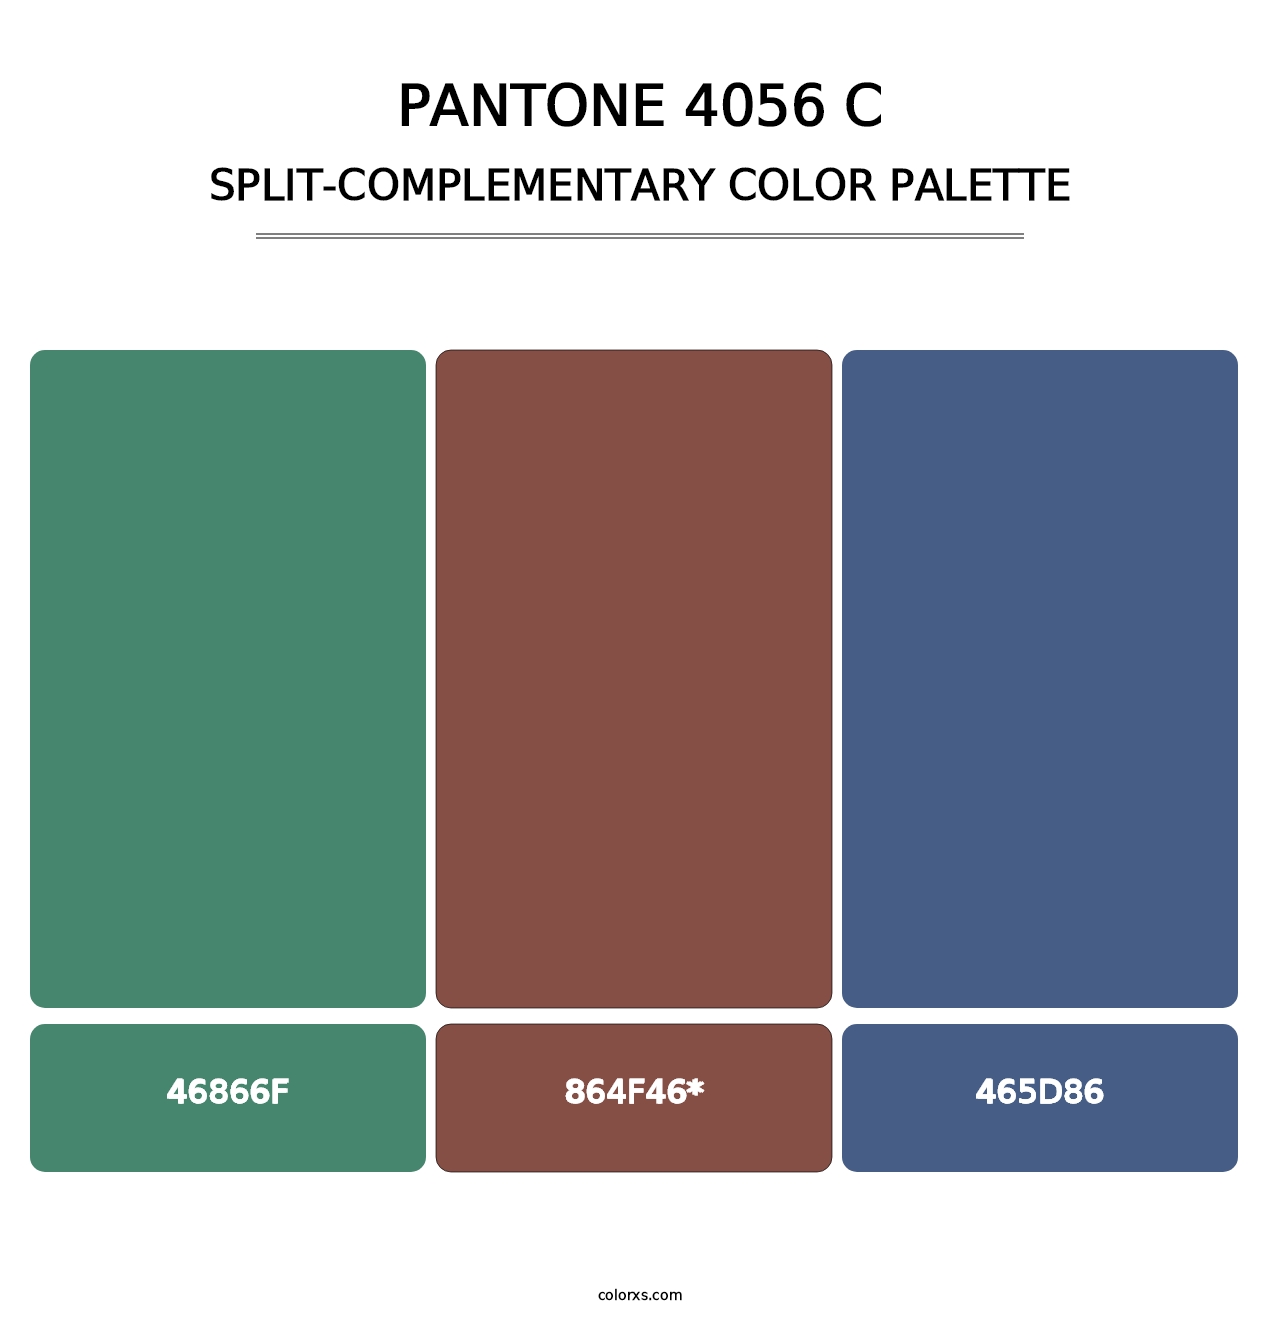 PANTONE 4056 C - Split-Complementary Color Palette